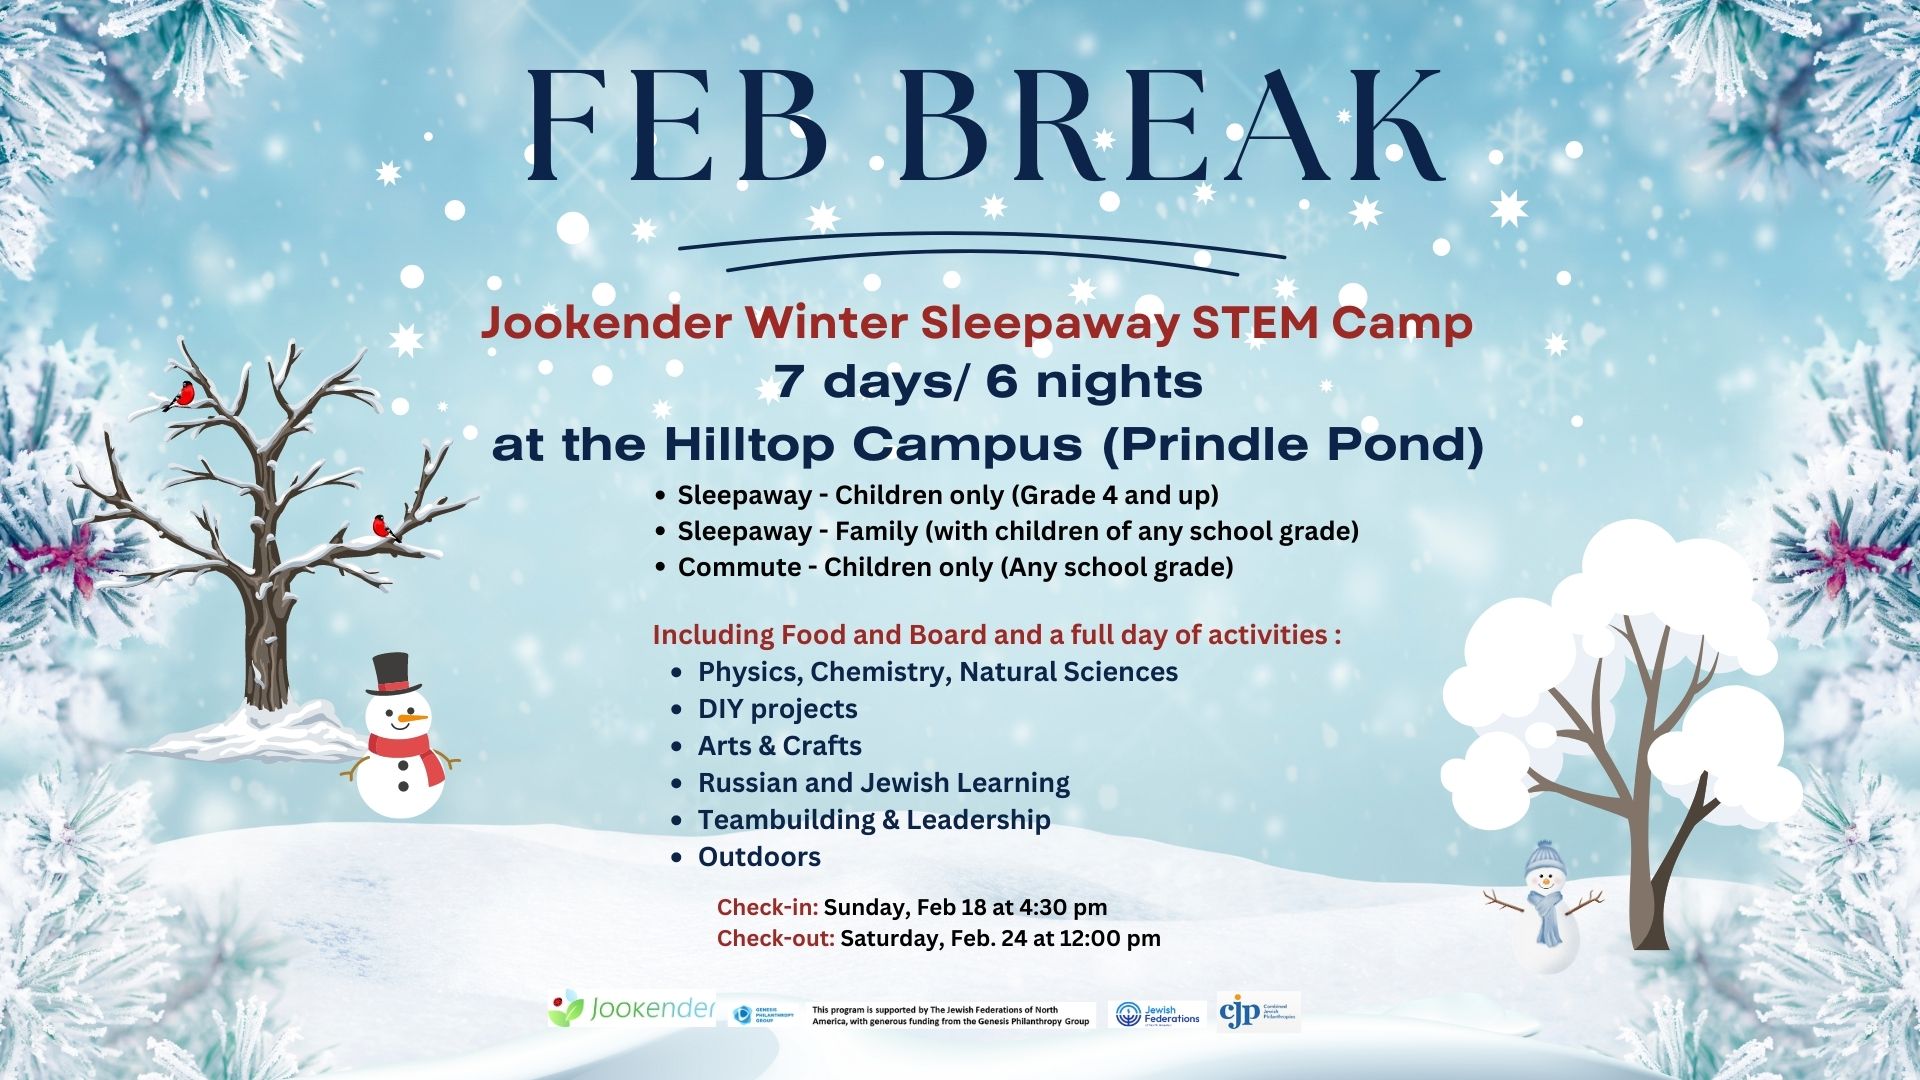 February Break Sleepaway Jookender STEM Camp